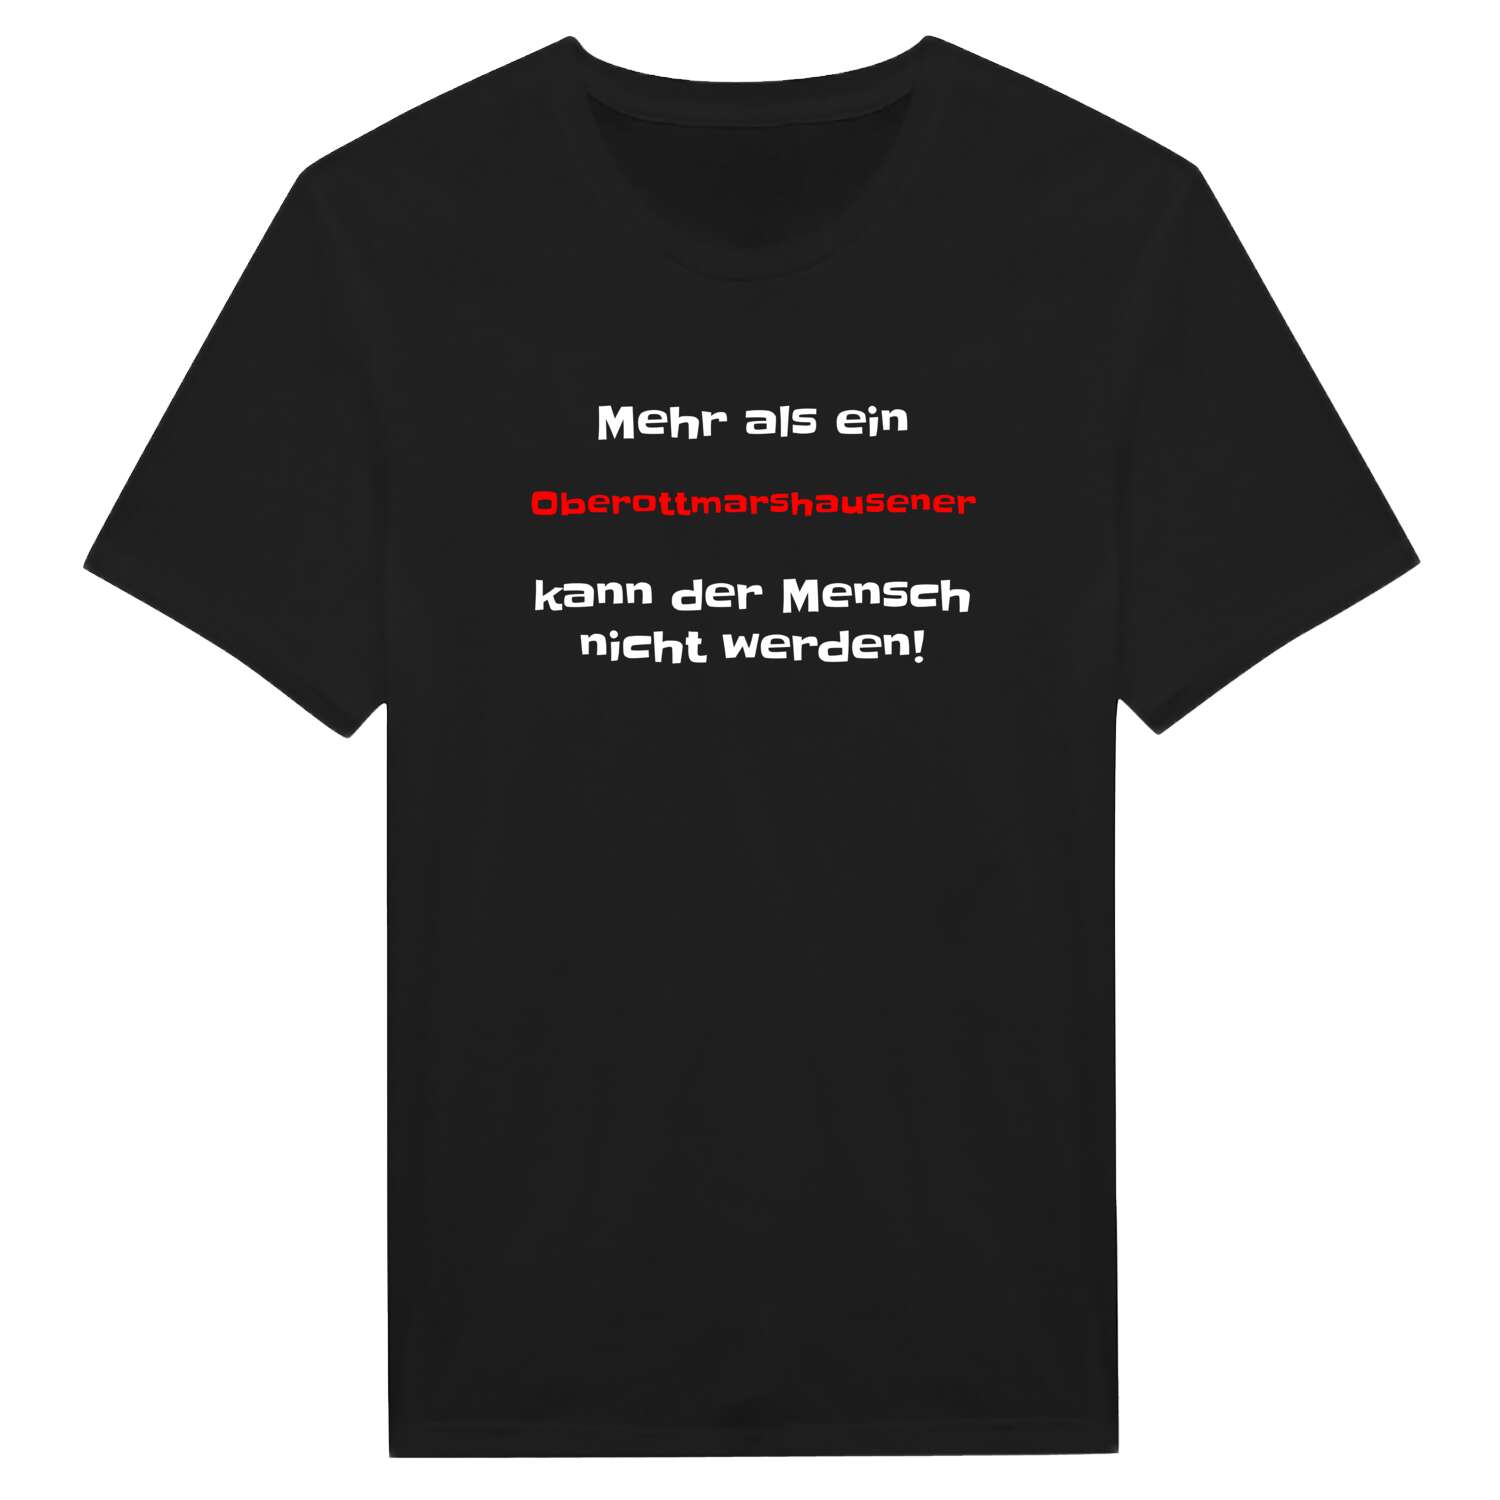 Oberottmarshausen T-Shirt »Mehr als ein«